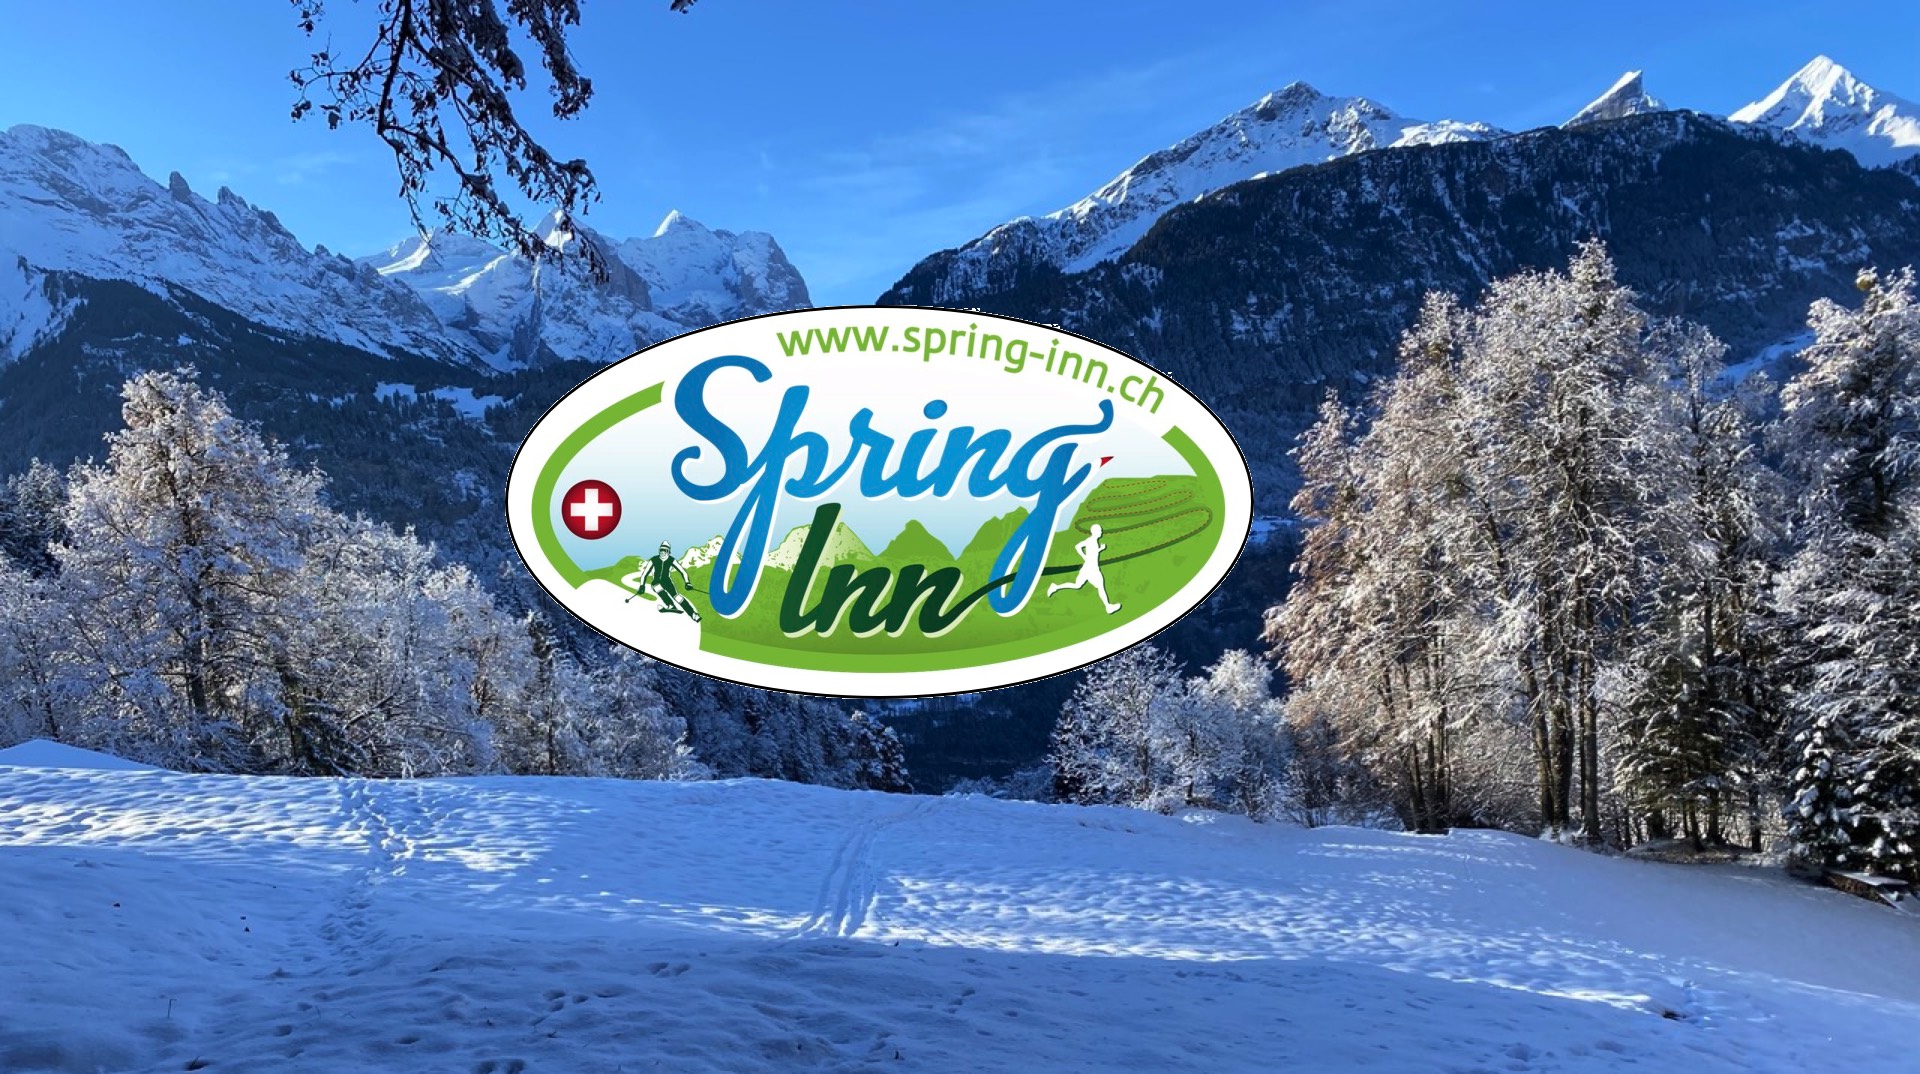 Spring Inn, Jungfrauregion, Haslital. Geniessen Sie die Skipisten am Hasliberg oder die Schlittelbahn von der Grossen Scheidegg nach Rosenlaui